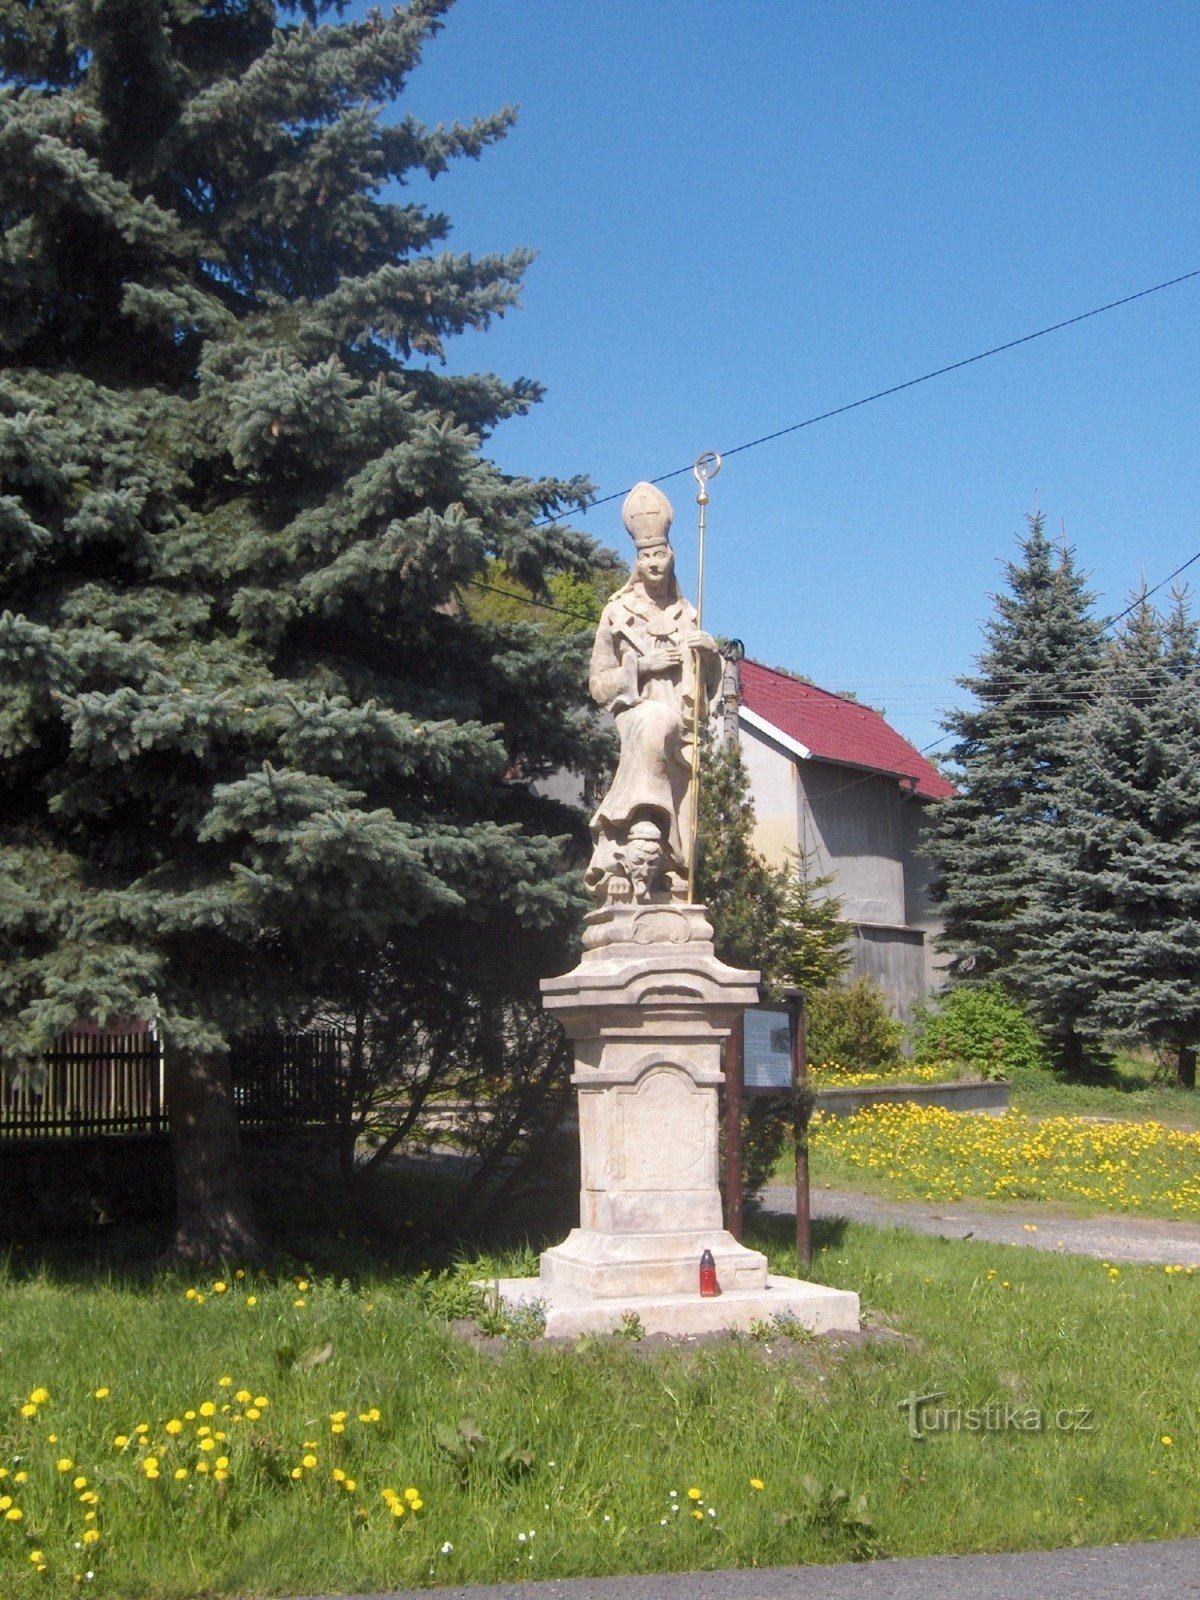 staty av St Procopius